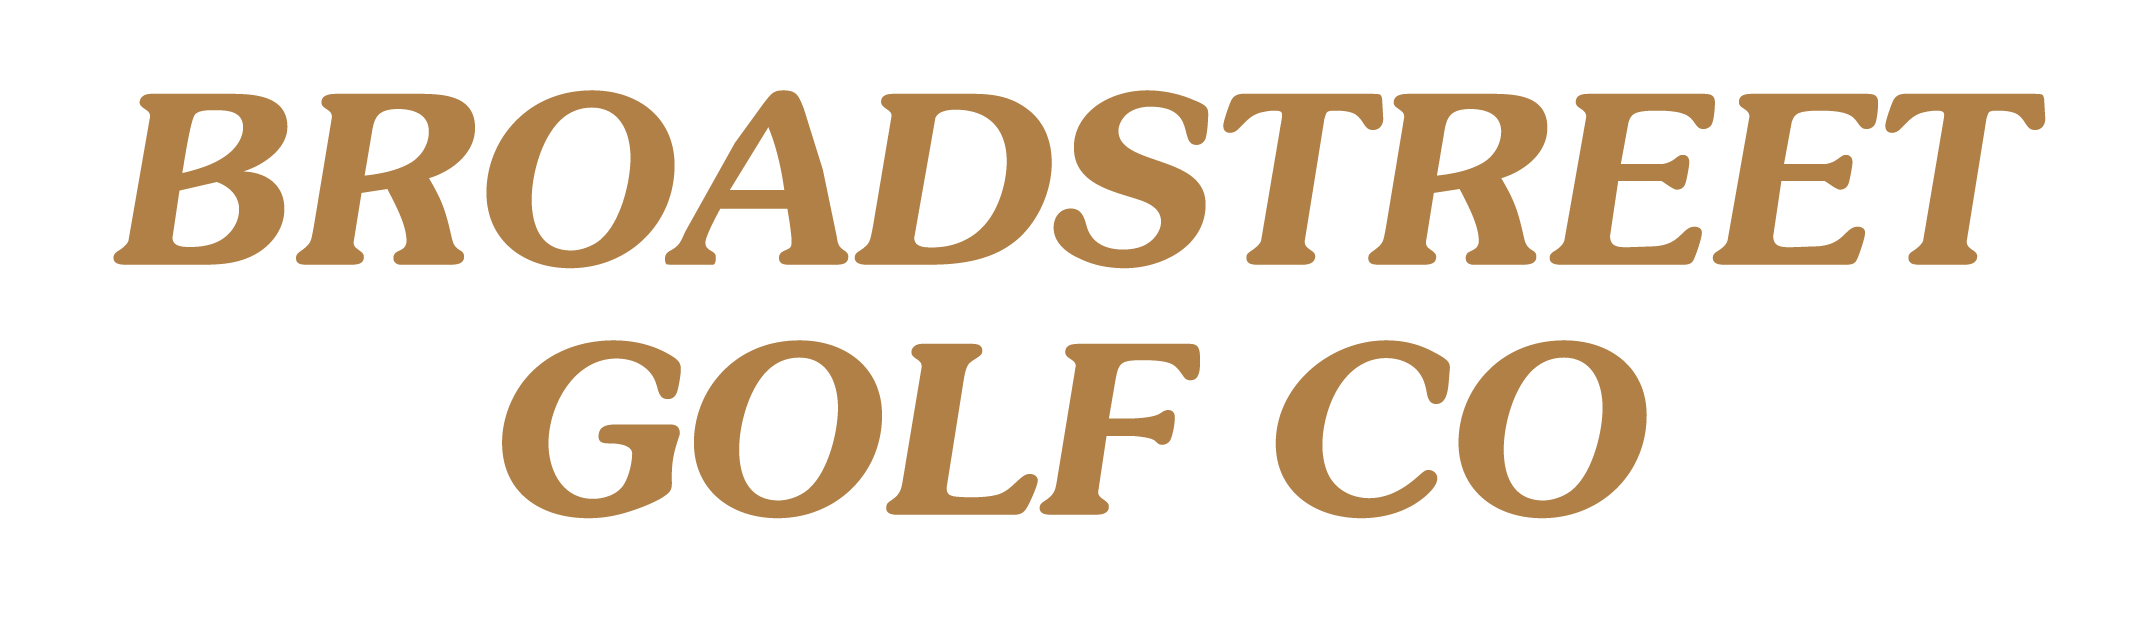 Broadstreet Golf Co